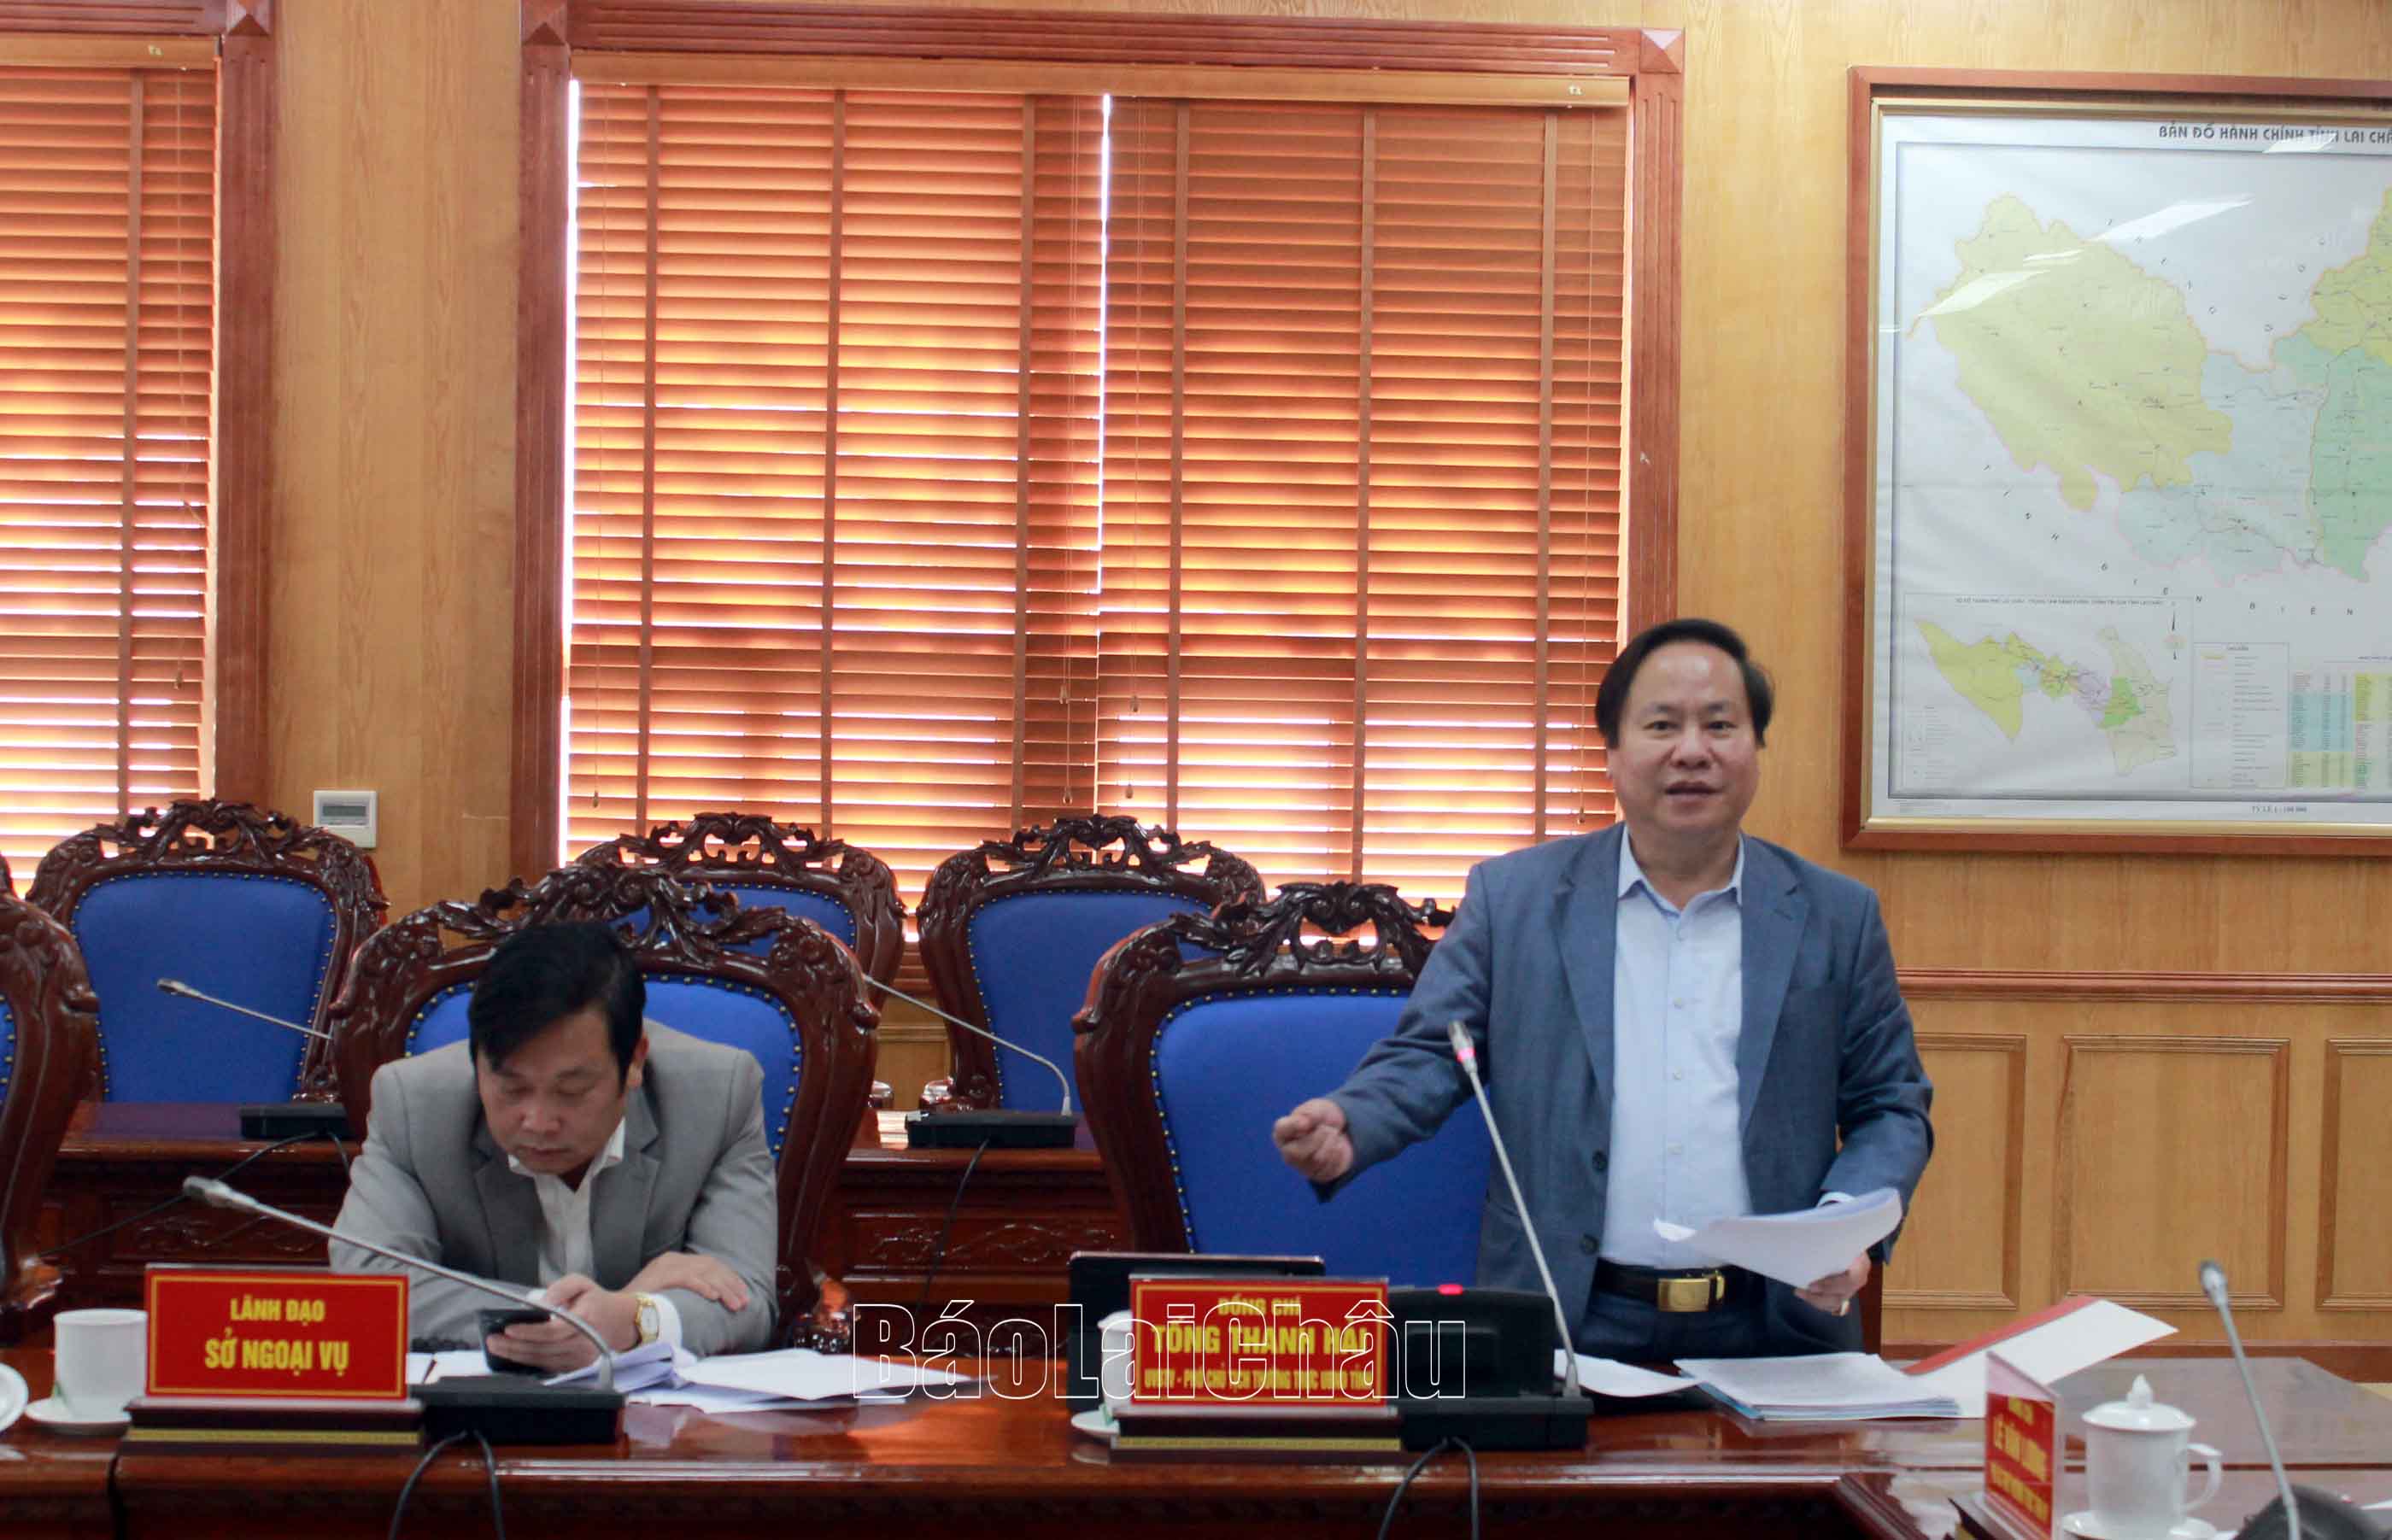 Đại diện lãnh đạo UBND tỉnh Lai Châu phát biểu tại hội nghị.